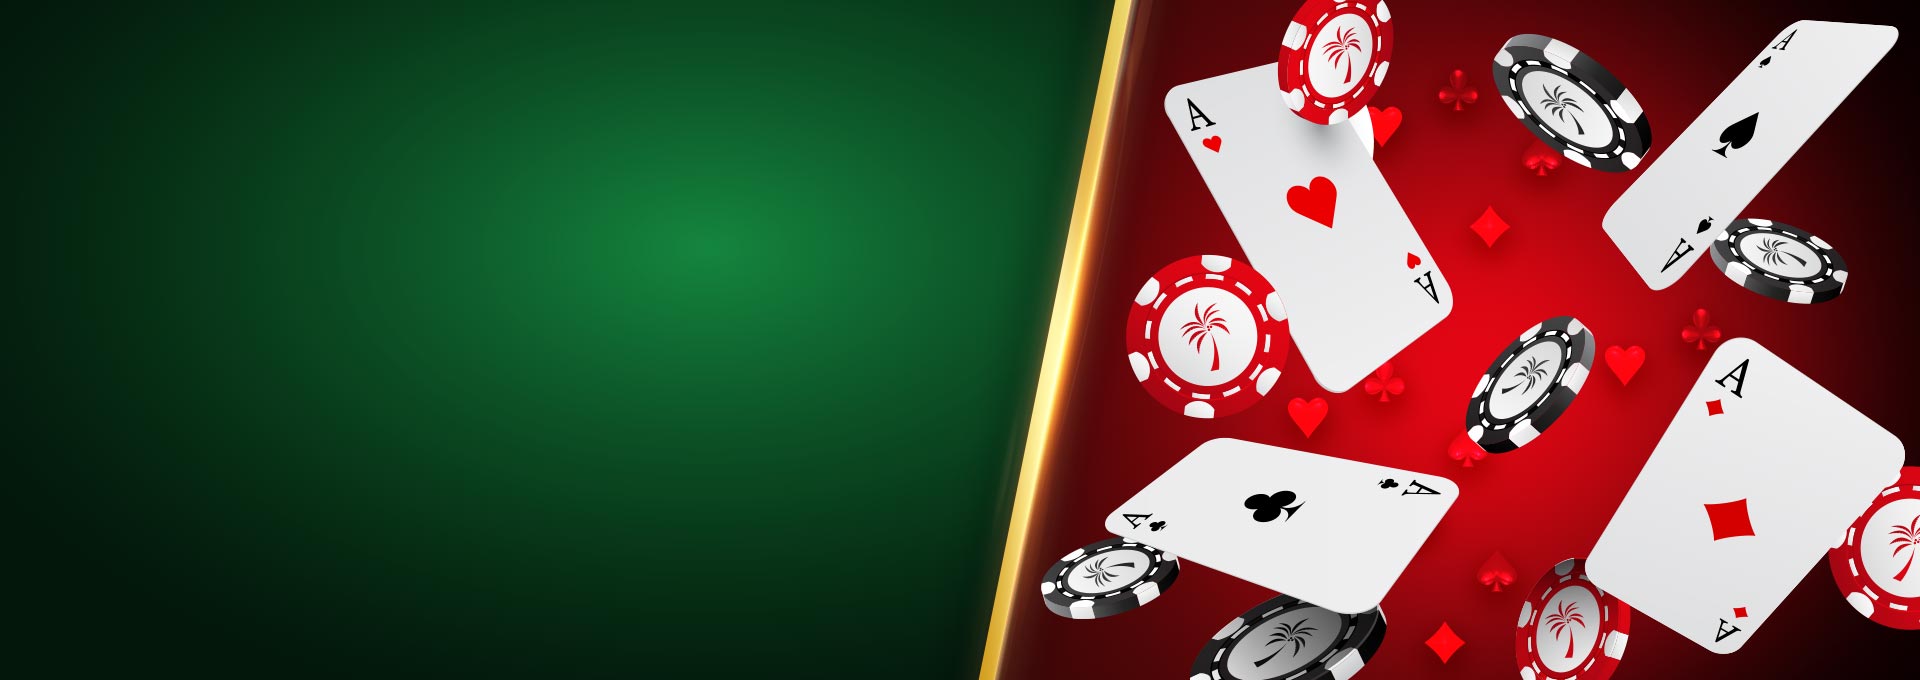 Как получить выигрыш в онлайн казино вулкан